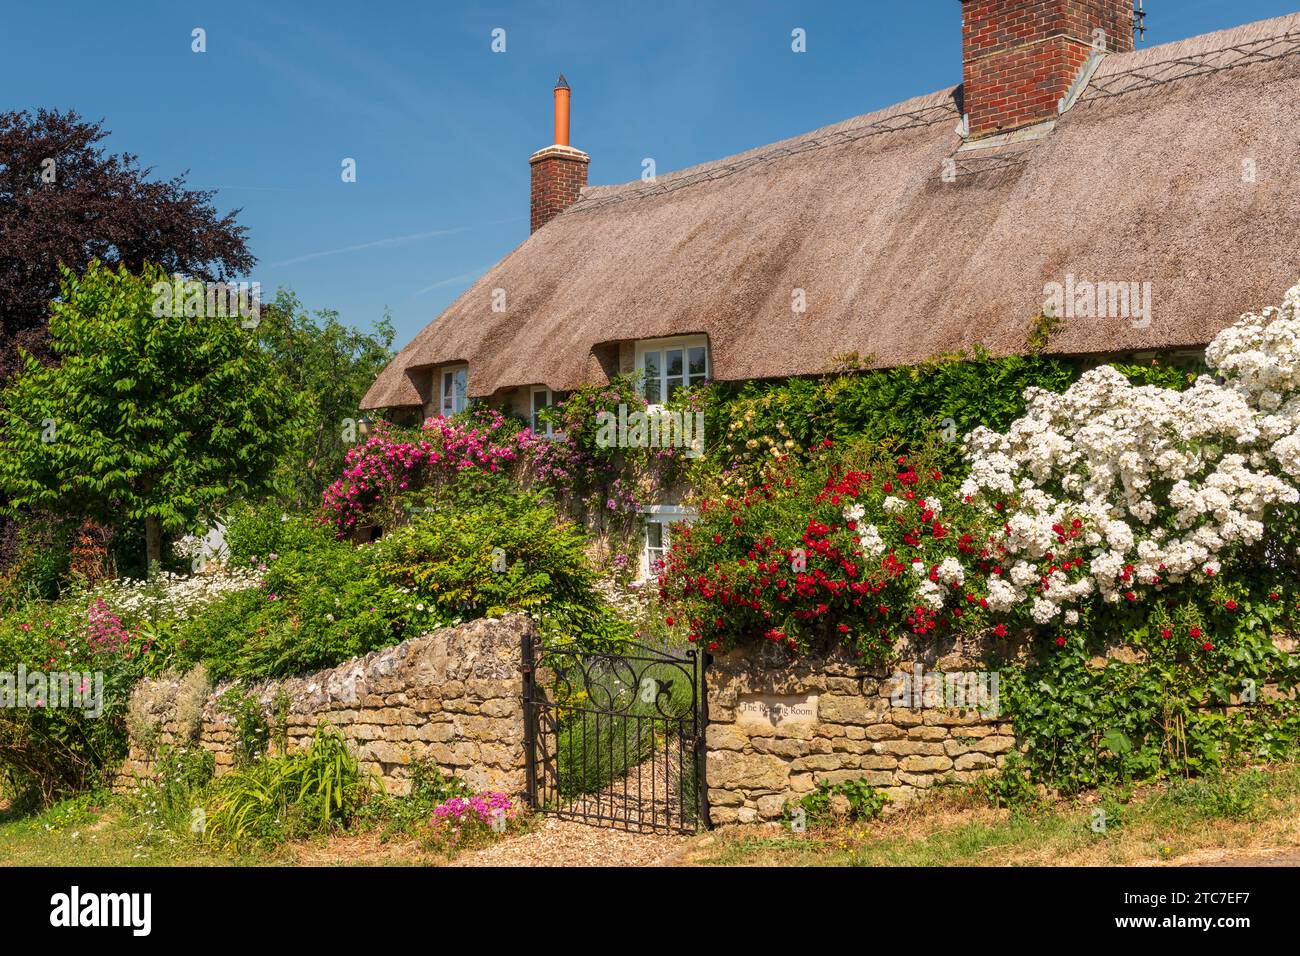 Chalet idyllique au chaume et jardin fleuri coloré dans le village de Powerstock, Dorset, Angleterre. Été (juin) 2023. Banque D'Images